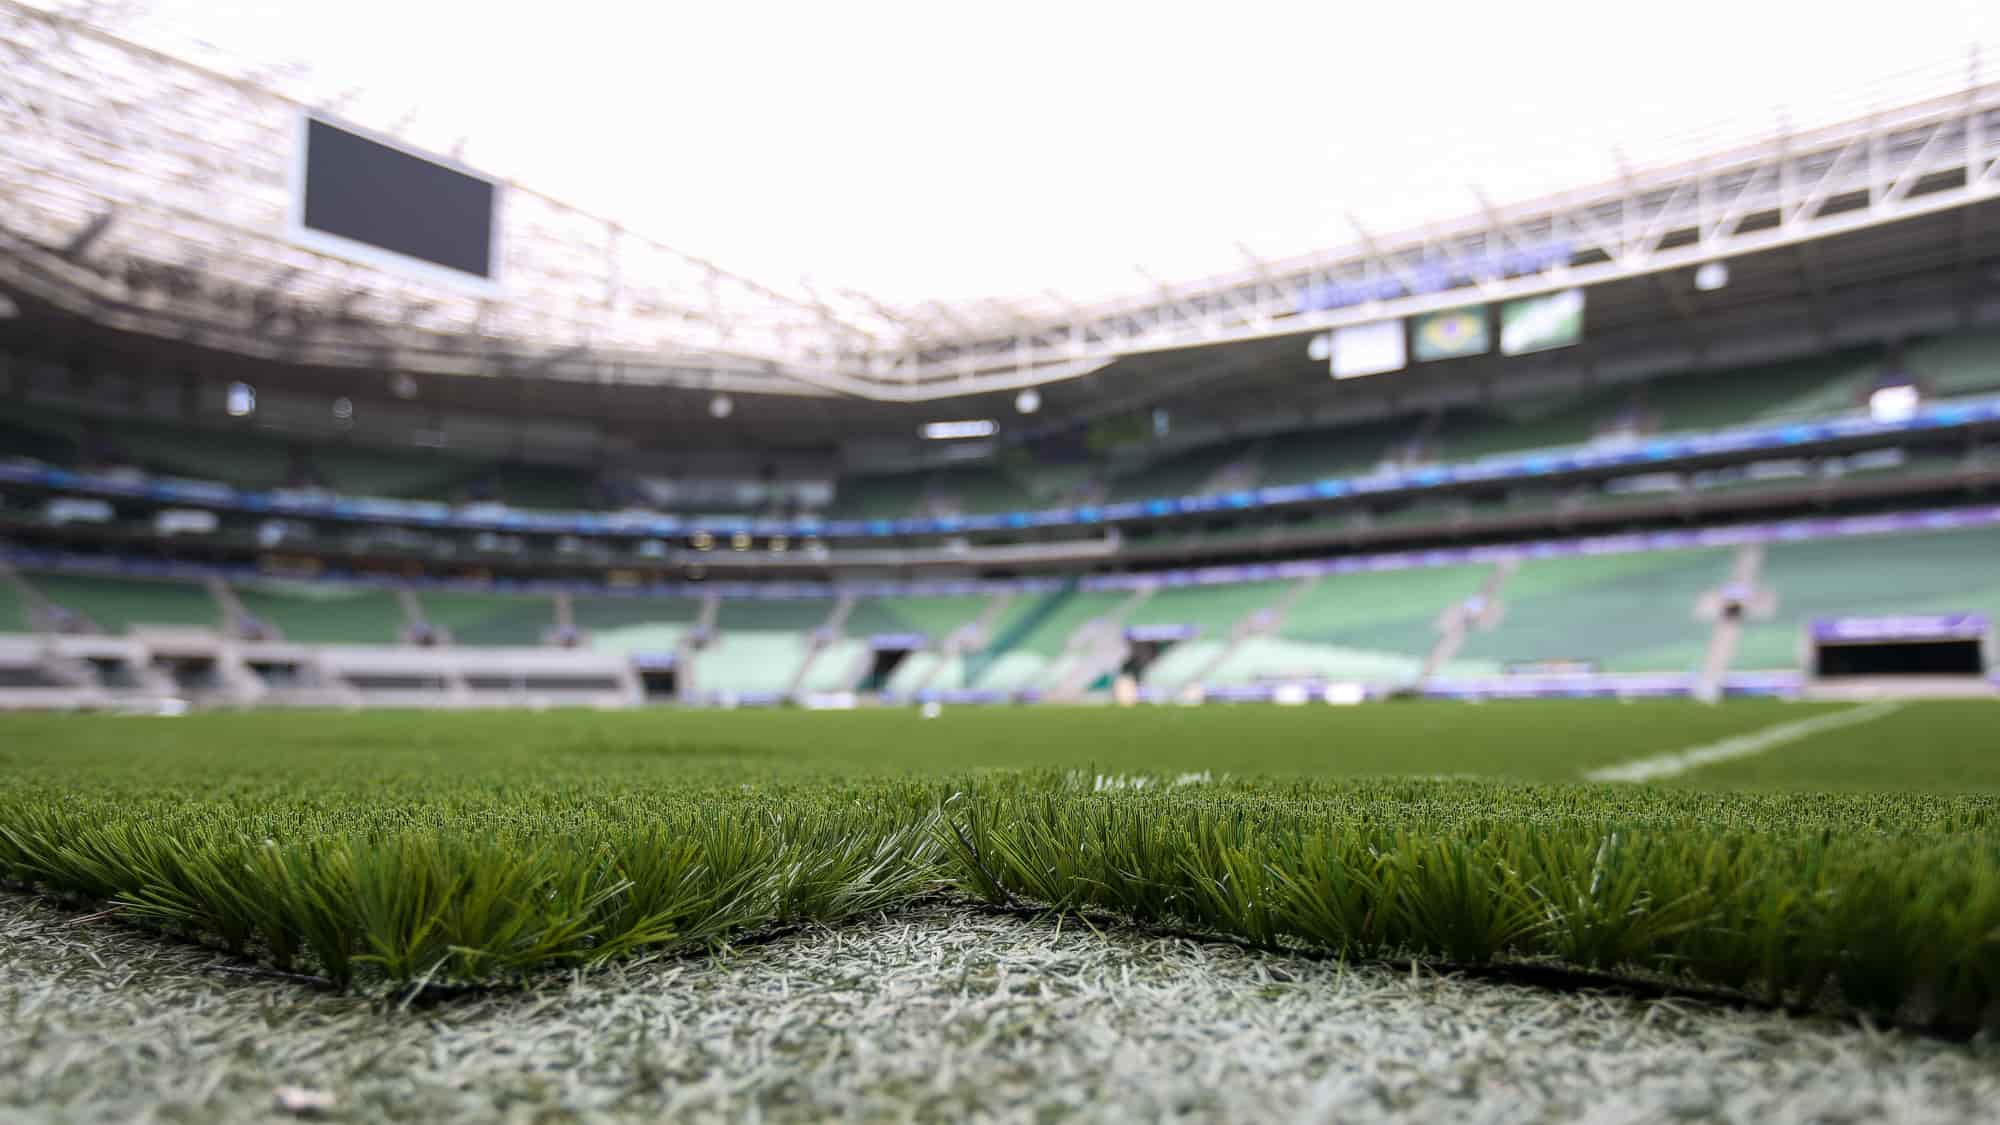 Dessa forma, desde a estreia do gramado sintético no Allianz Parque, foram oito partidas em casa, com seis vitórias e dois empates, num aproveitamento de 83,3% no campo.